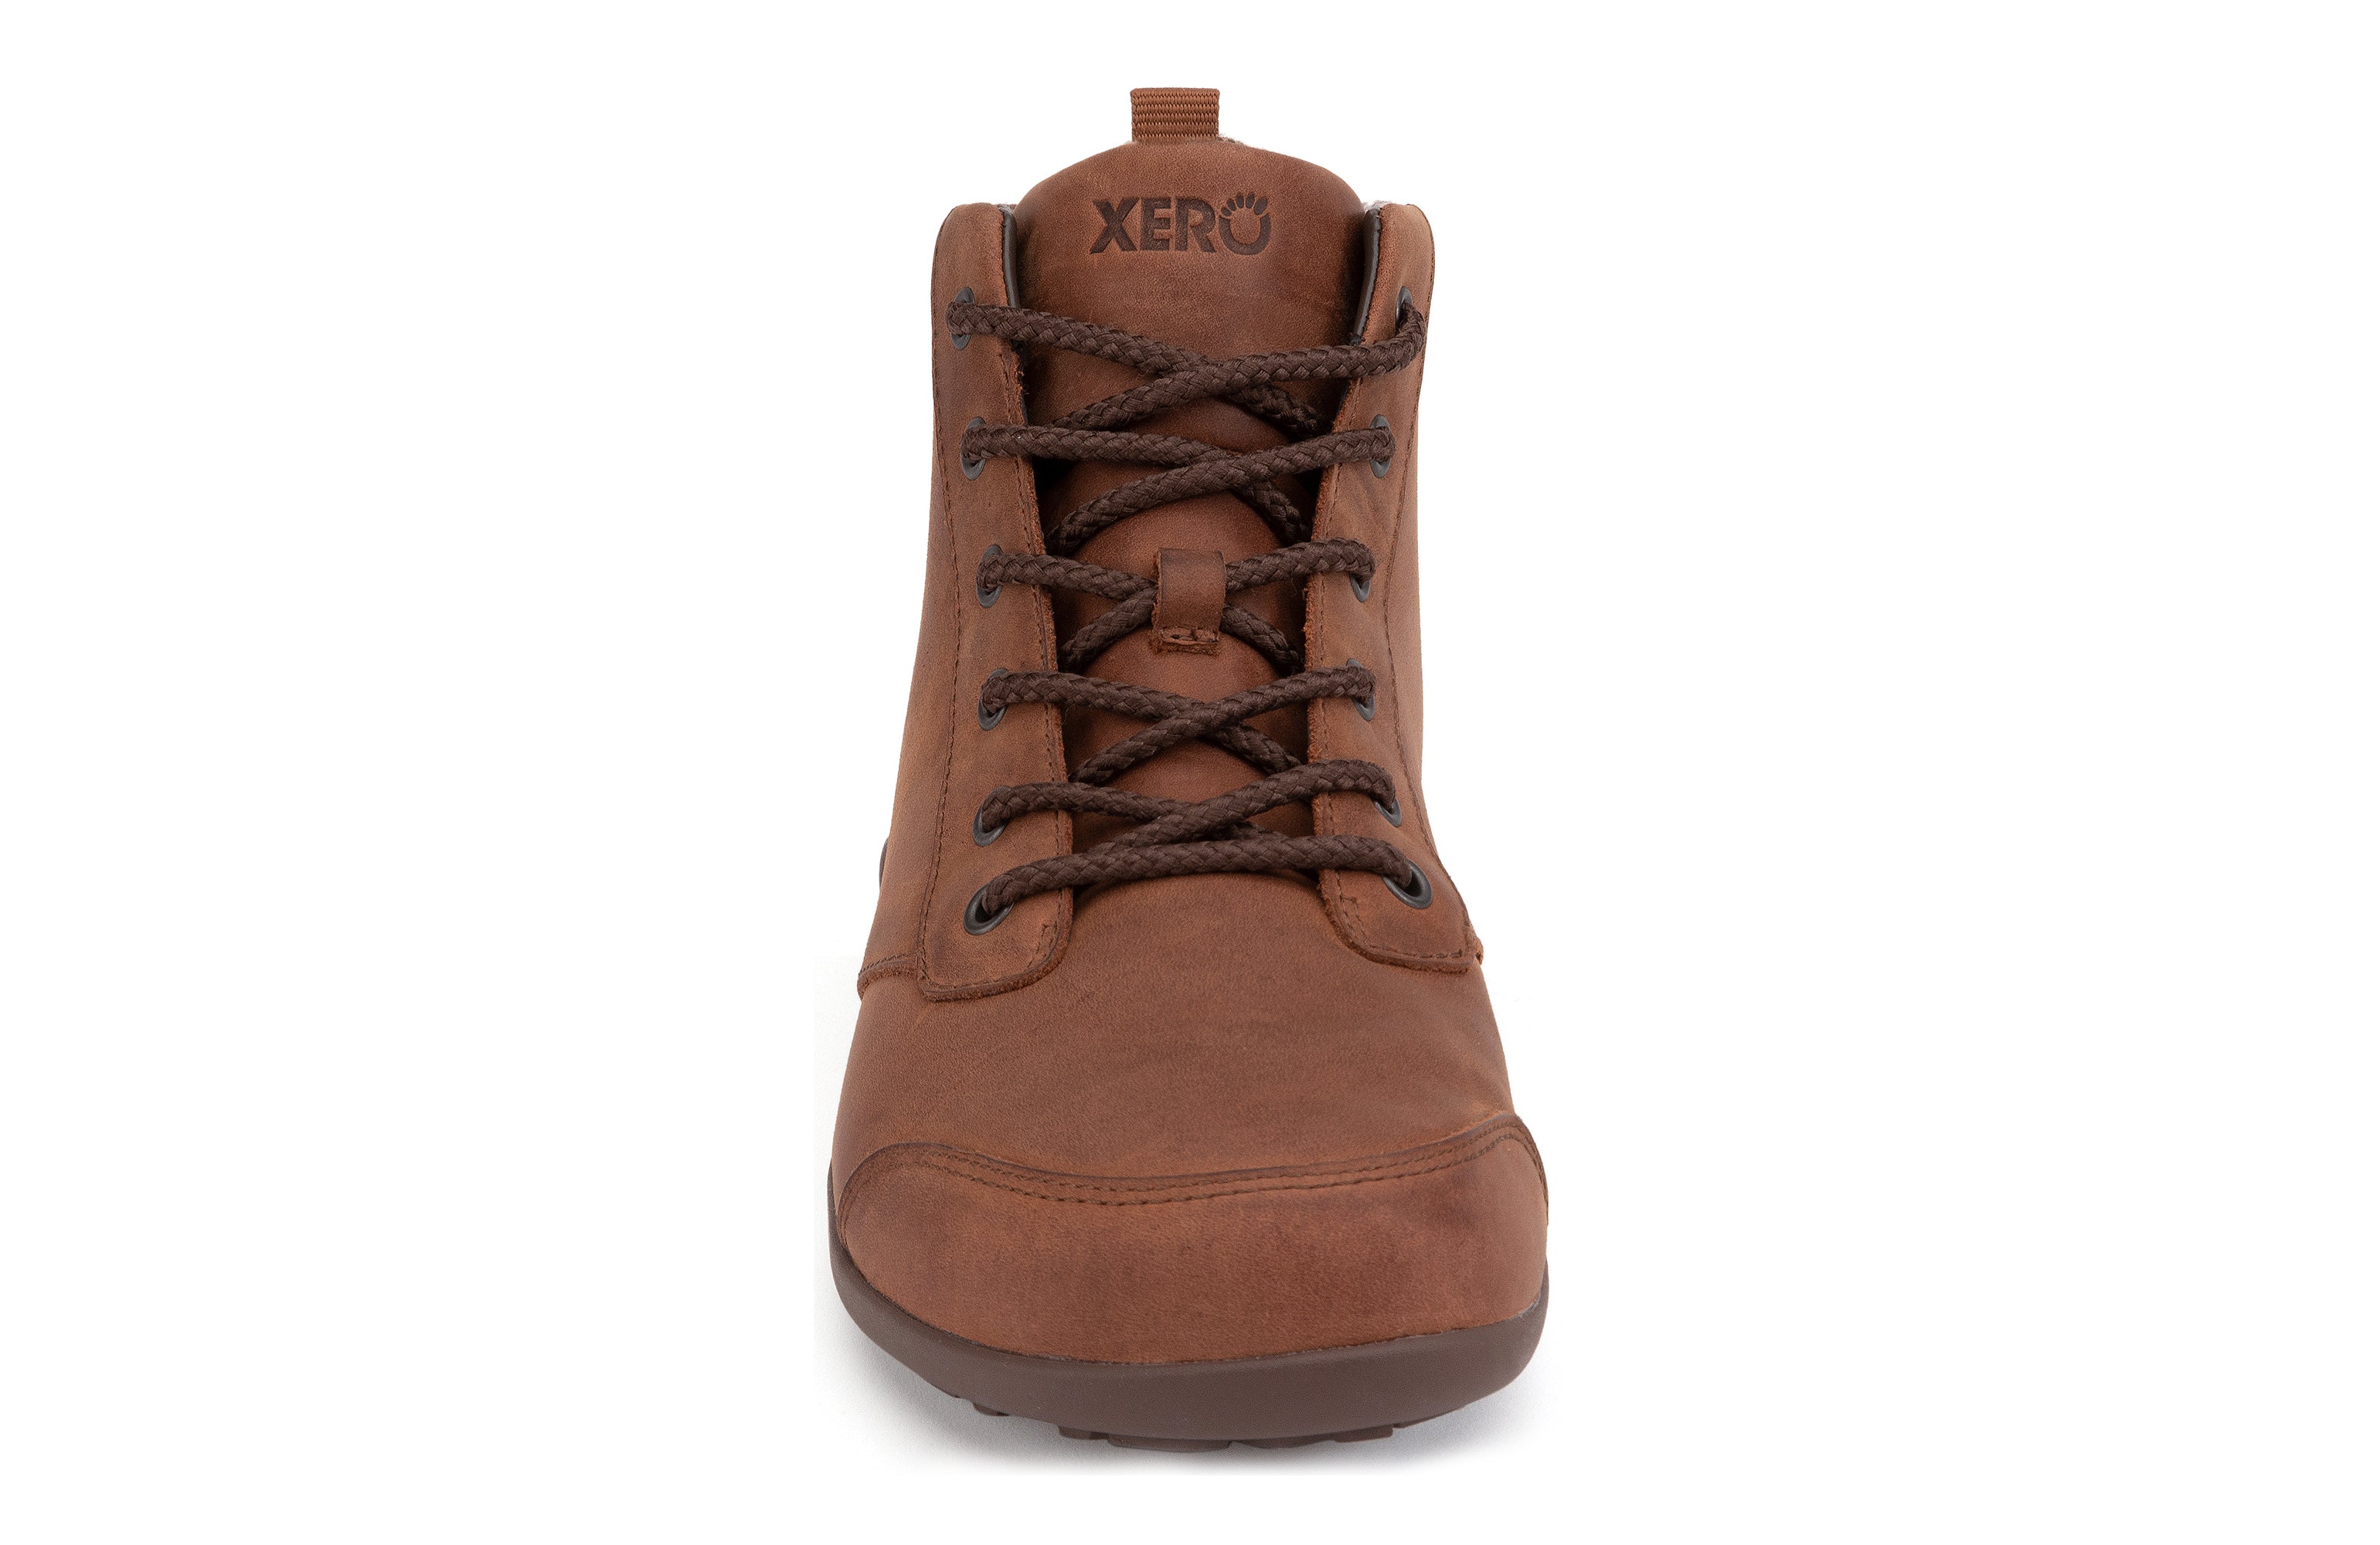 Xero Shoes Denver Leather barfods vinterstøvler til mænd i farven brown, forfra